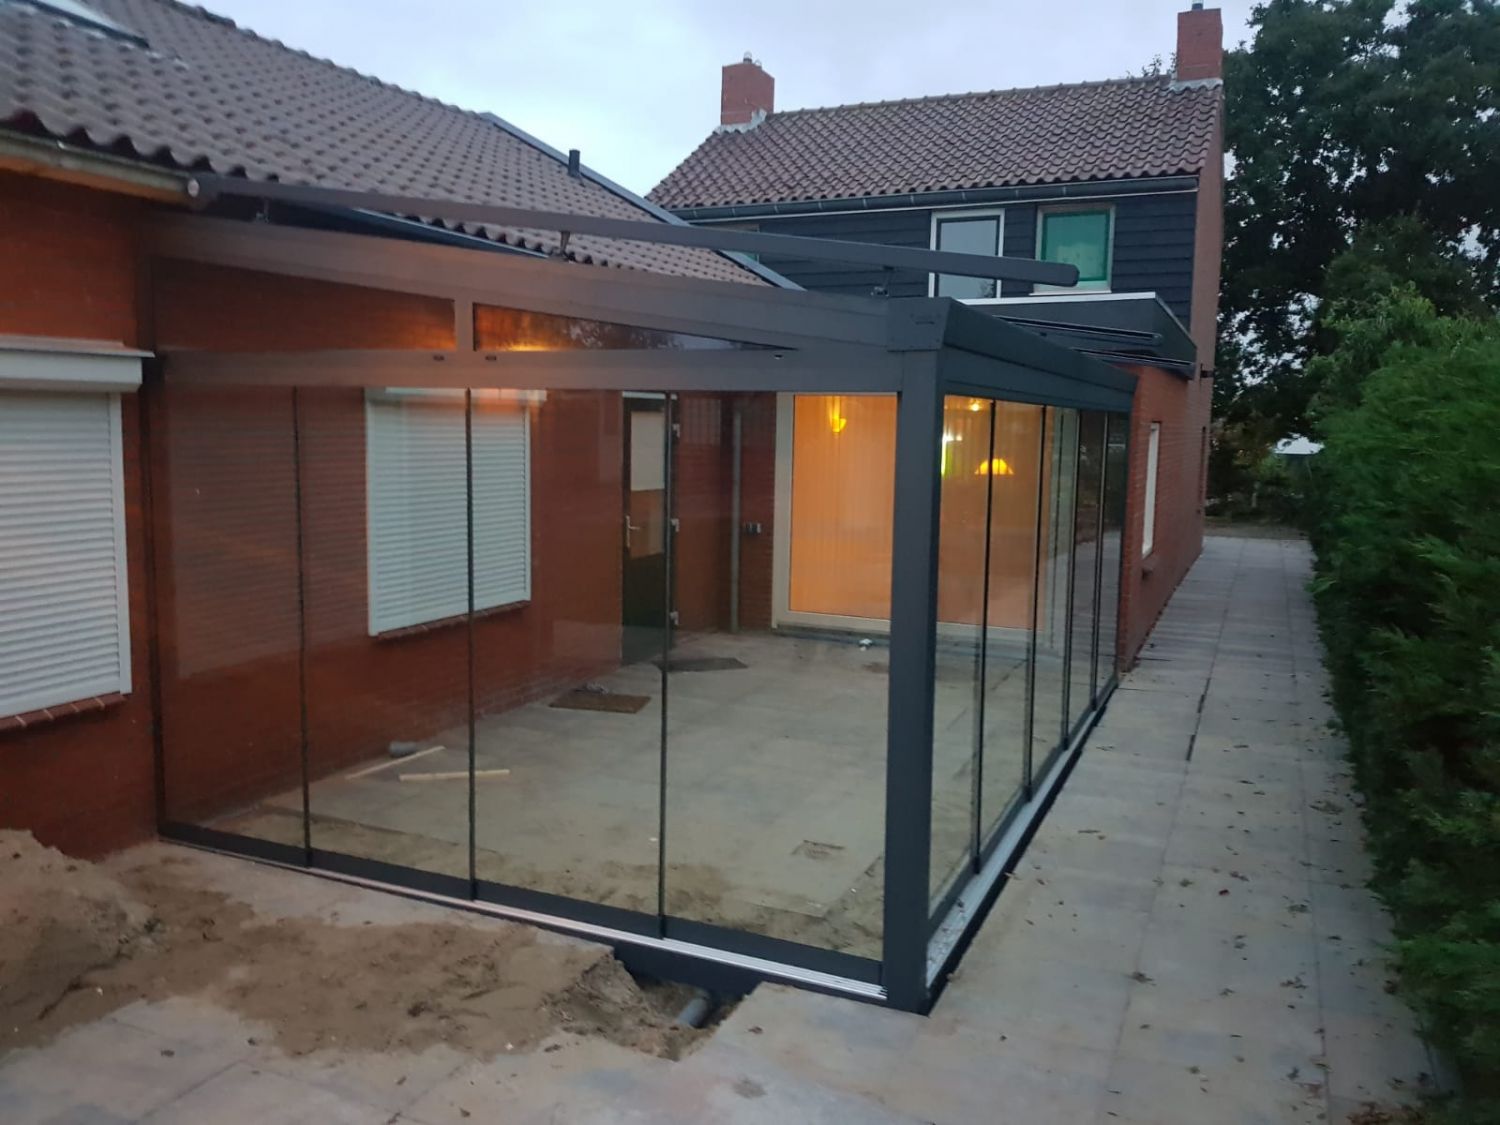 01-project-aluminium-profiline-veranda-verandavillage-2